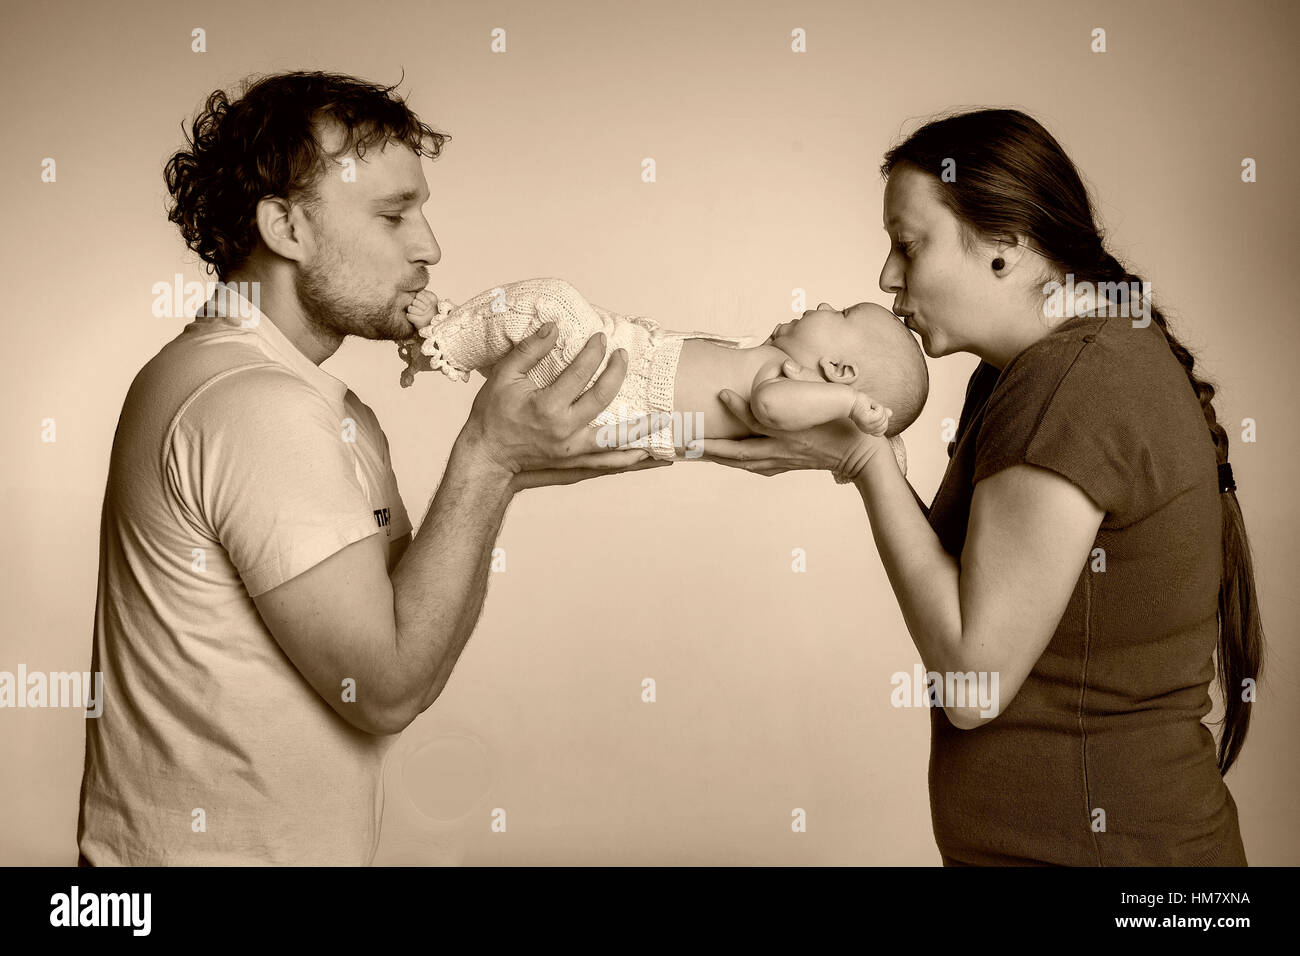 Ritratto Di Famiglia In Studio L Uomo E La Donna Il Bacio Del Bambino In Piedi E Testa Foto Stock Alamy